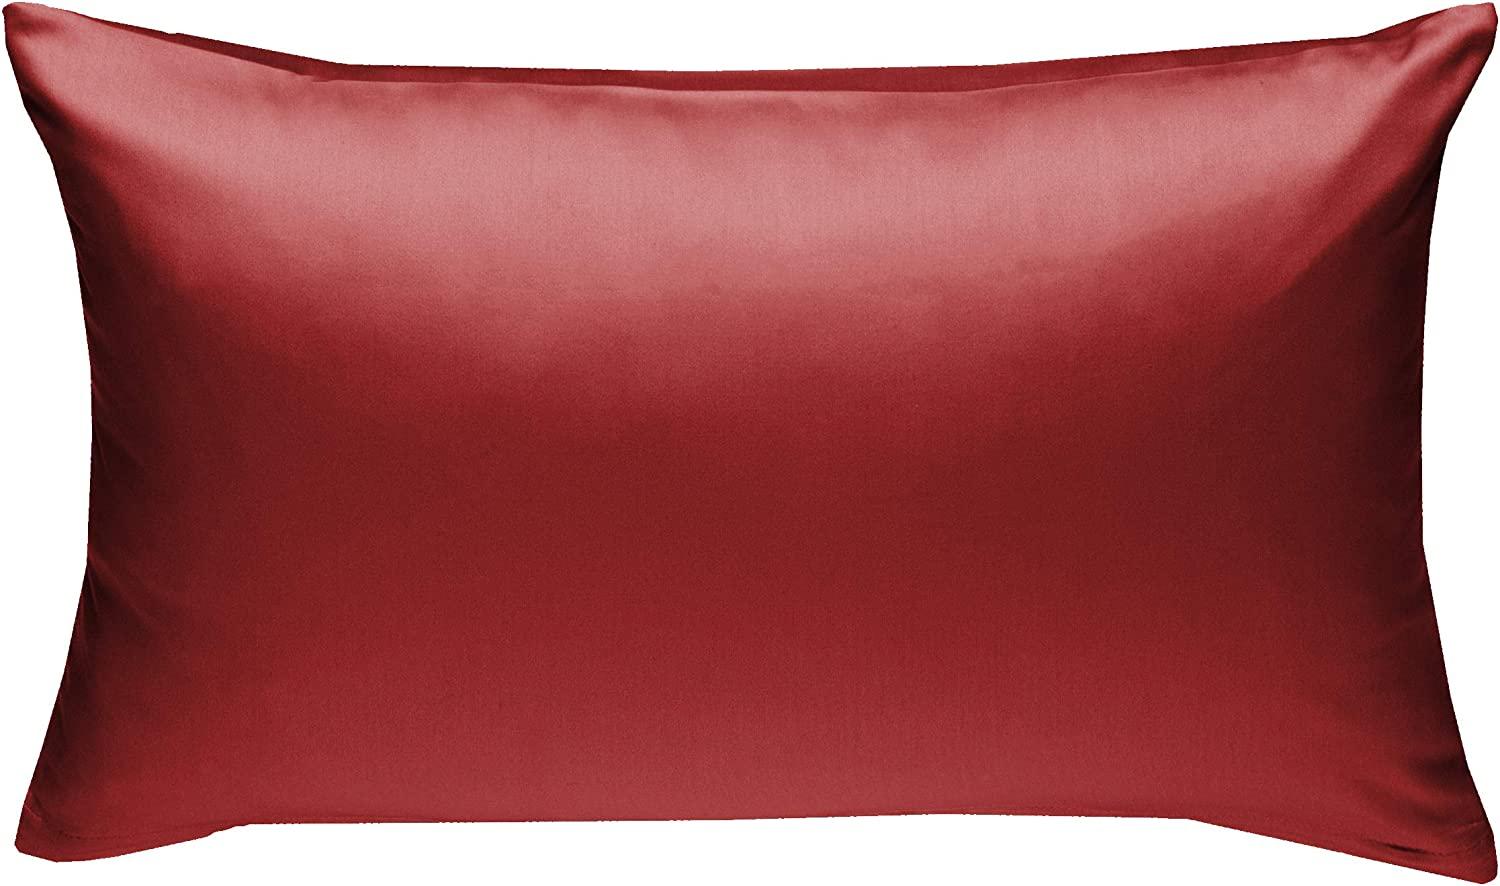 Bettwaesche-mit-Stil Mako-Satin / Baumwollsatin Bettwäsche uni / einfarbig rot Kissenbezug 50x70 cm Bild 1